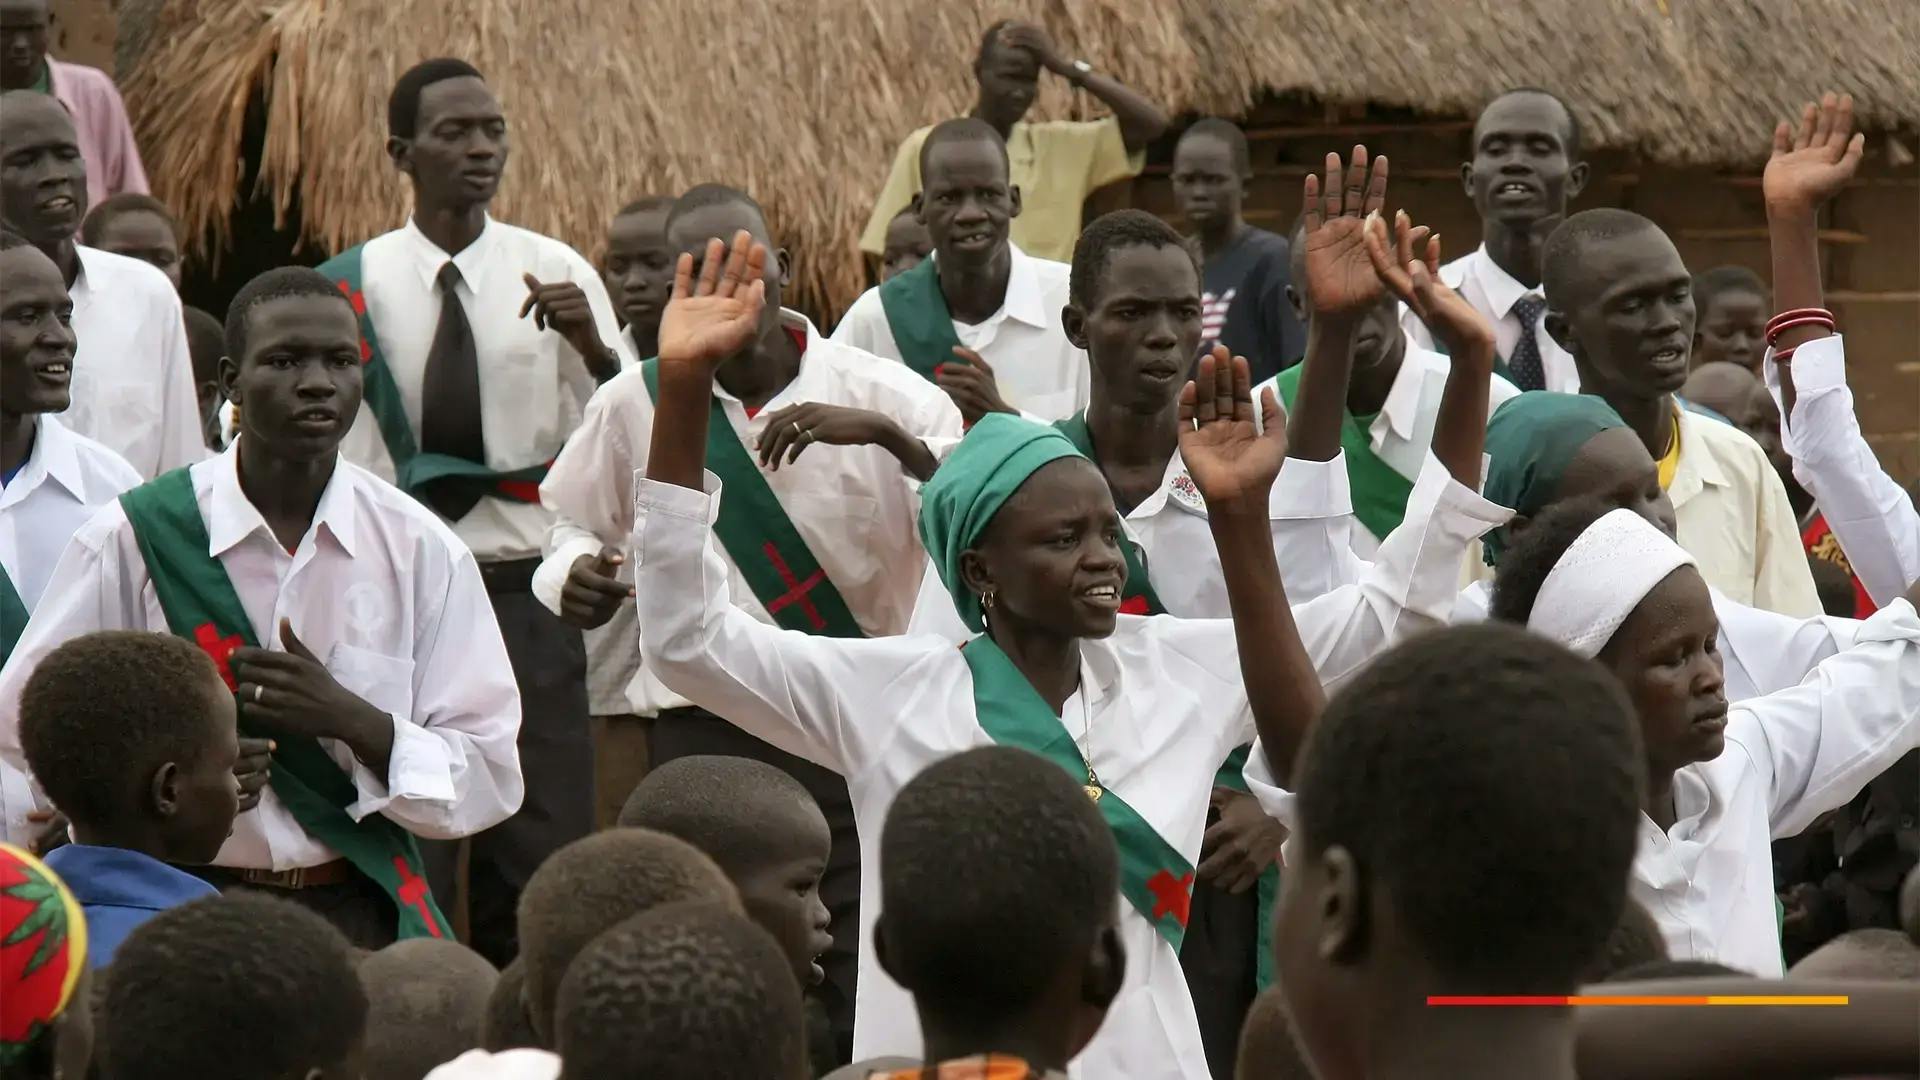 Los países más peligrosos para los cristianos: Sudán